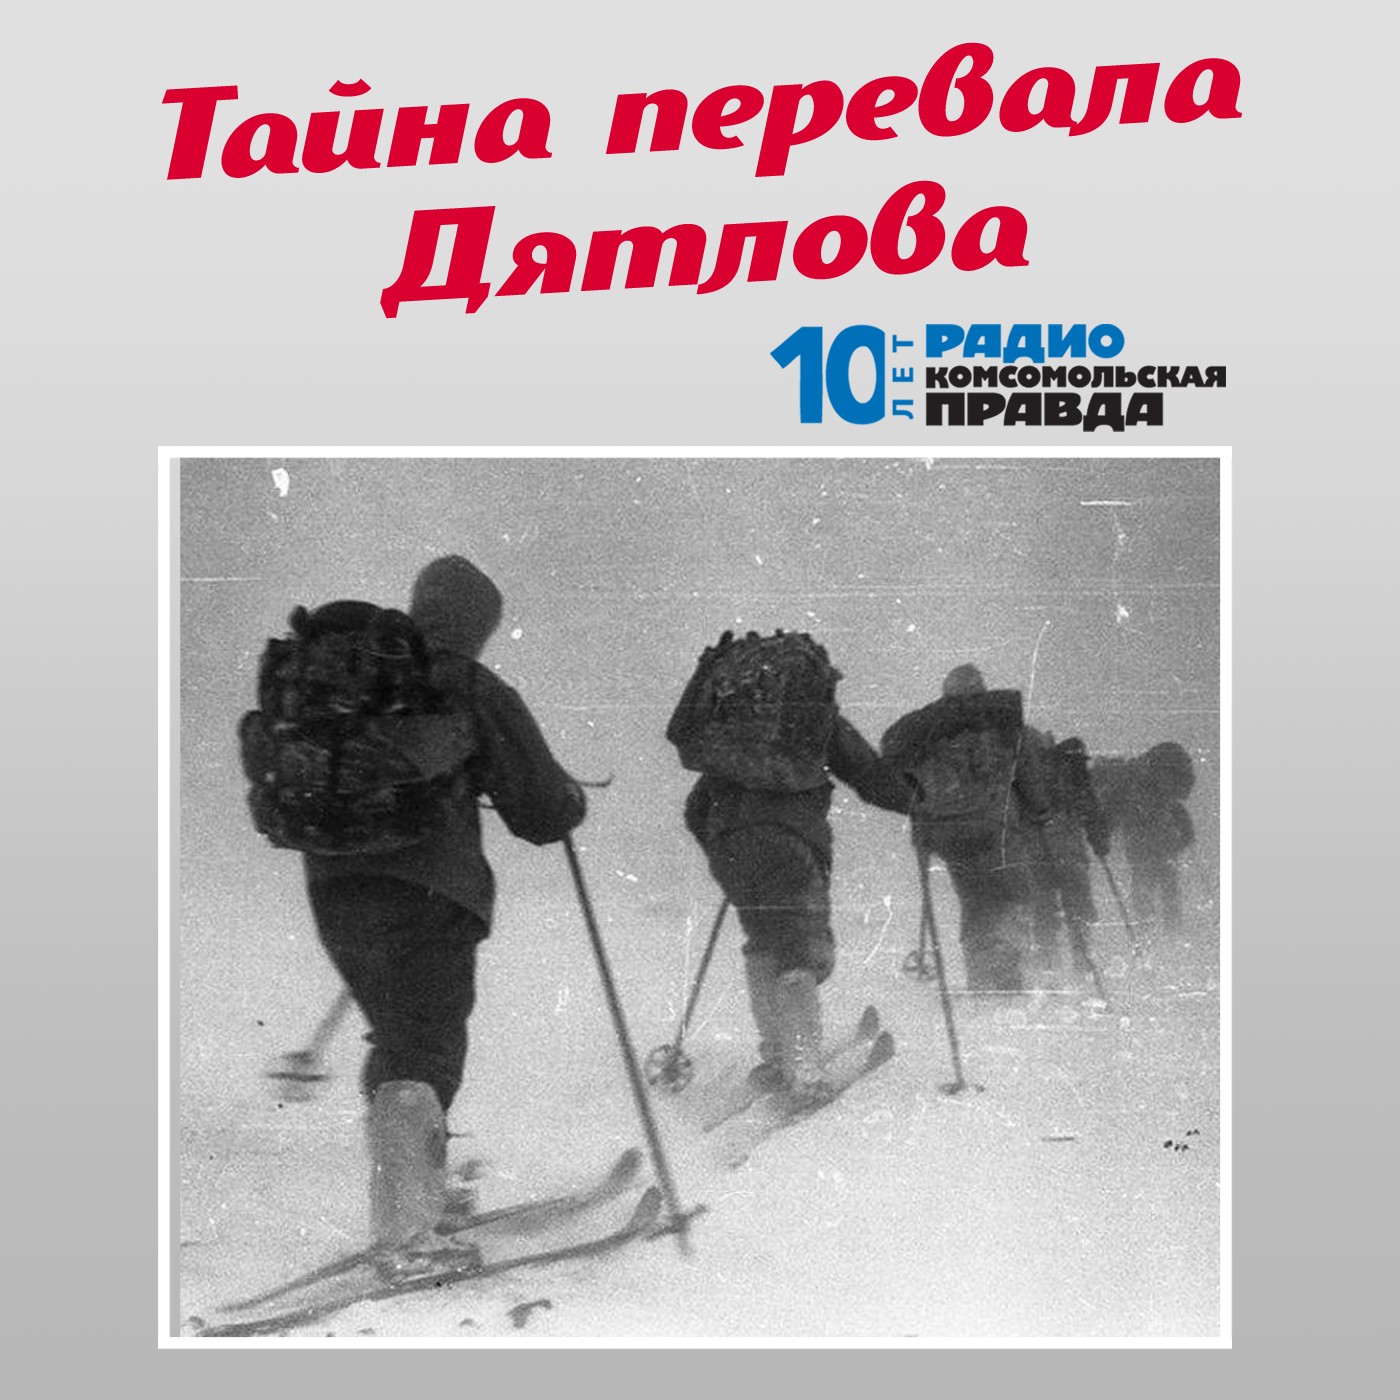 Скачать Трагедия на перевале Дятлова: 64 версии загадочной гибели туристов в 1959 году. Часть 3 и 4 - Творческий коллектив программы «Тайна перевала Дятлова»